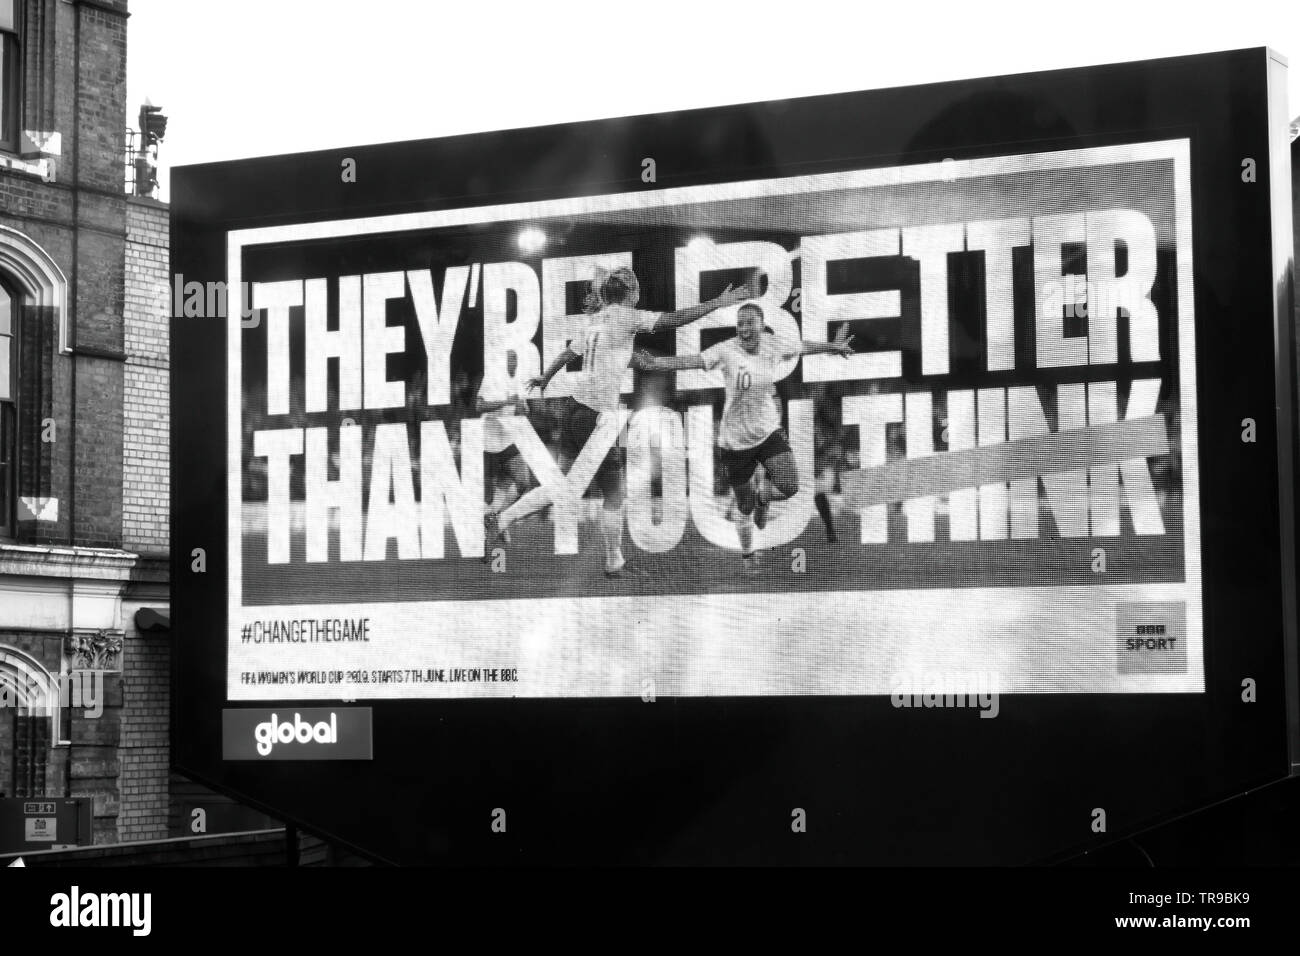 Football féminin BBC Sport affiche publicitaire « ils sont meilleurs que vous pensez » avant la coupe du monde 2019 à Londres, Angleterre, Royaume-Uni KATHY DEWITT Banque D'Images